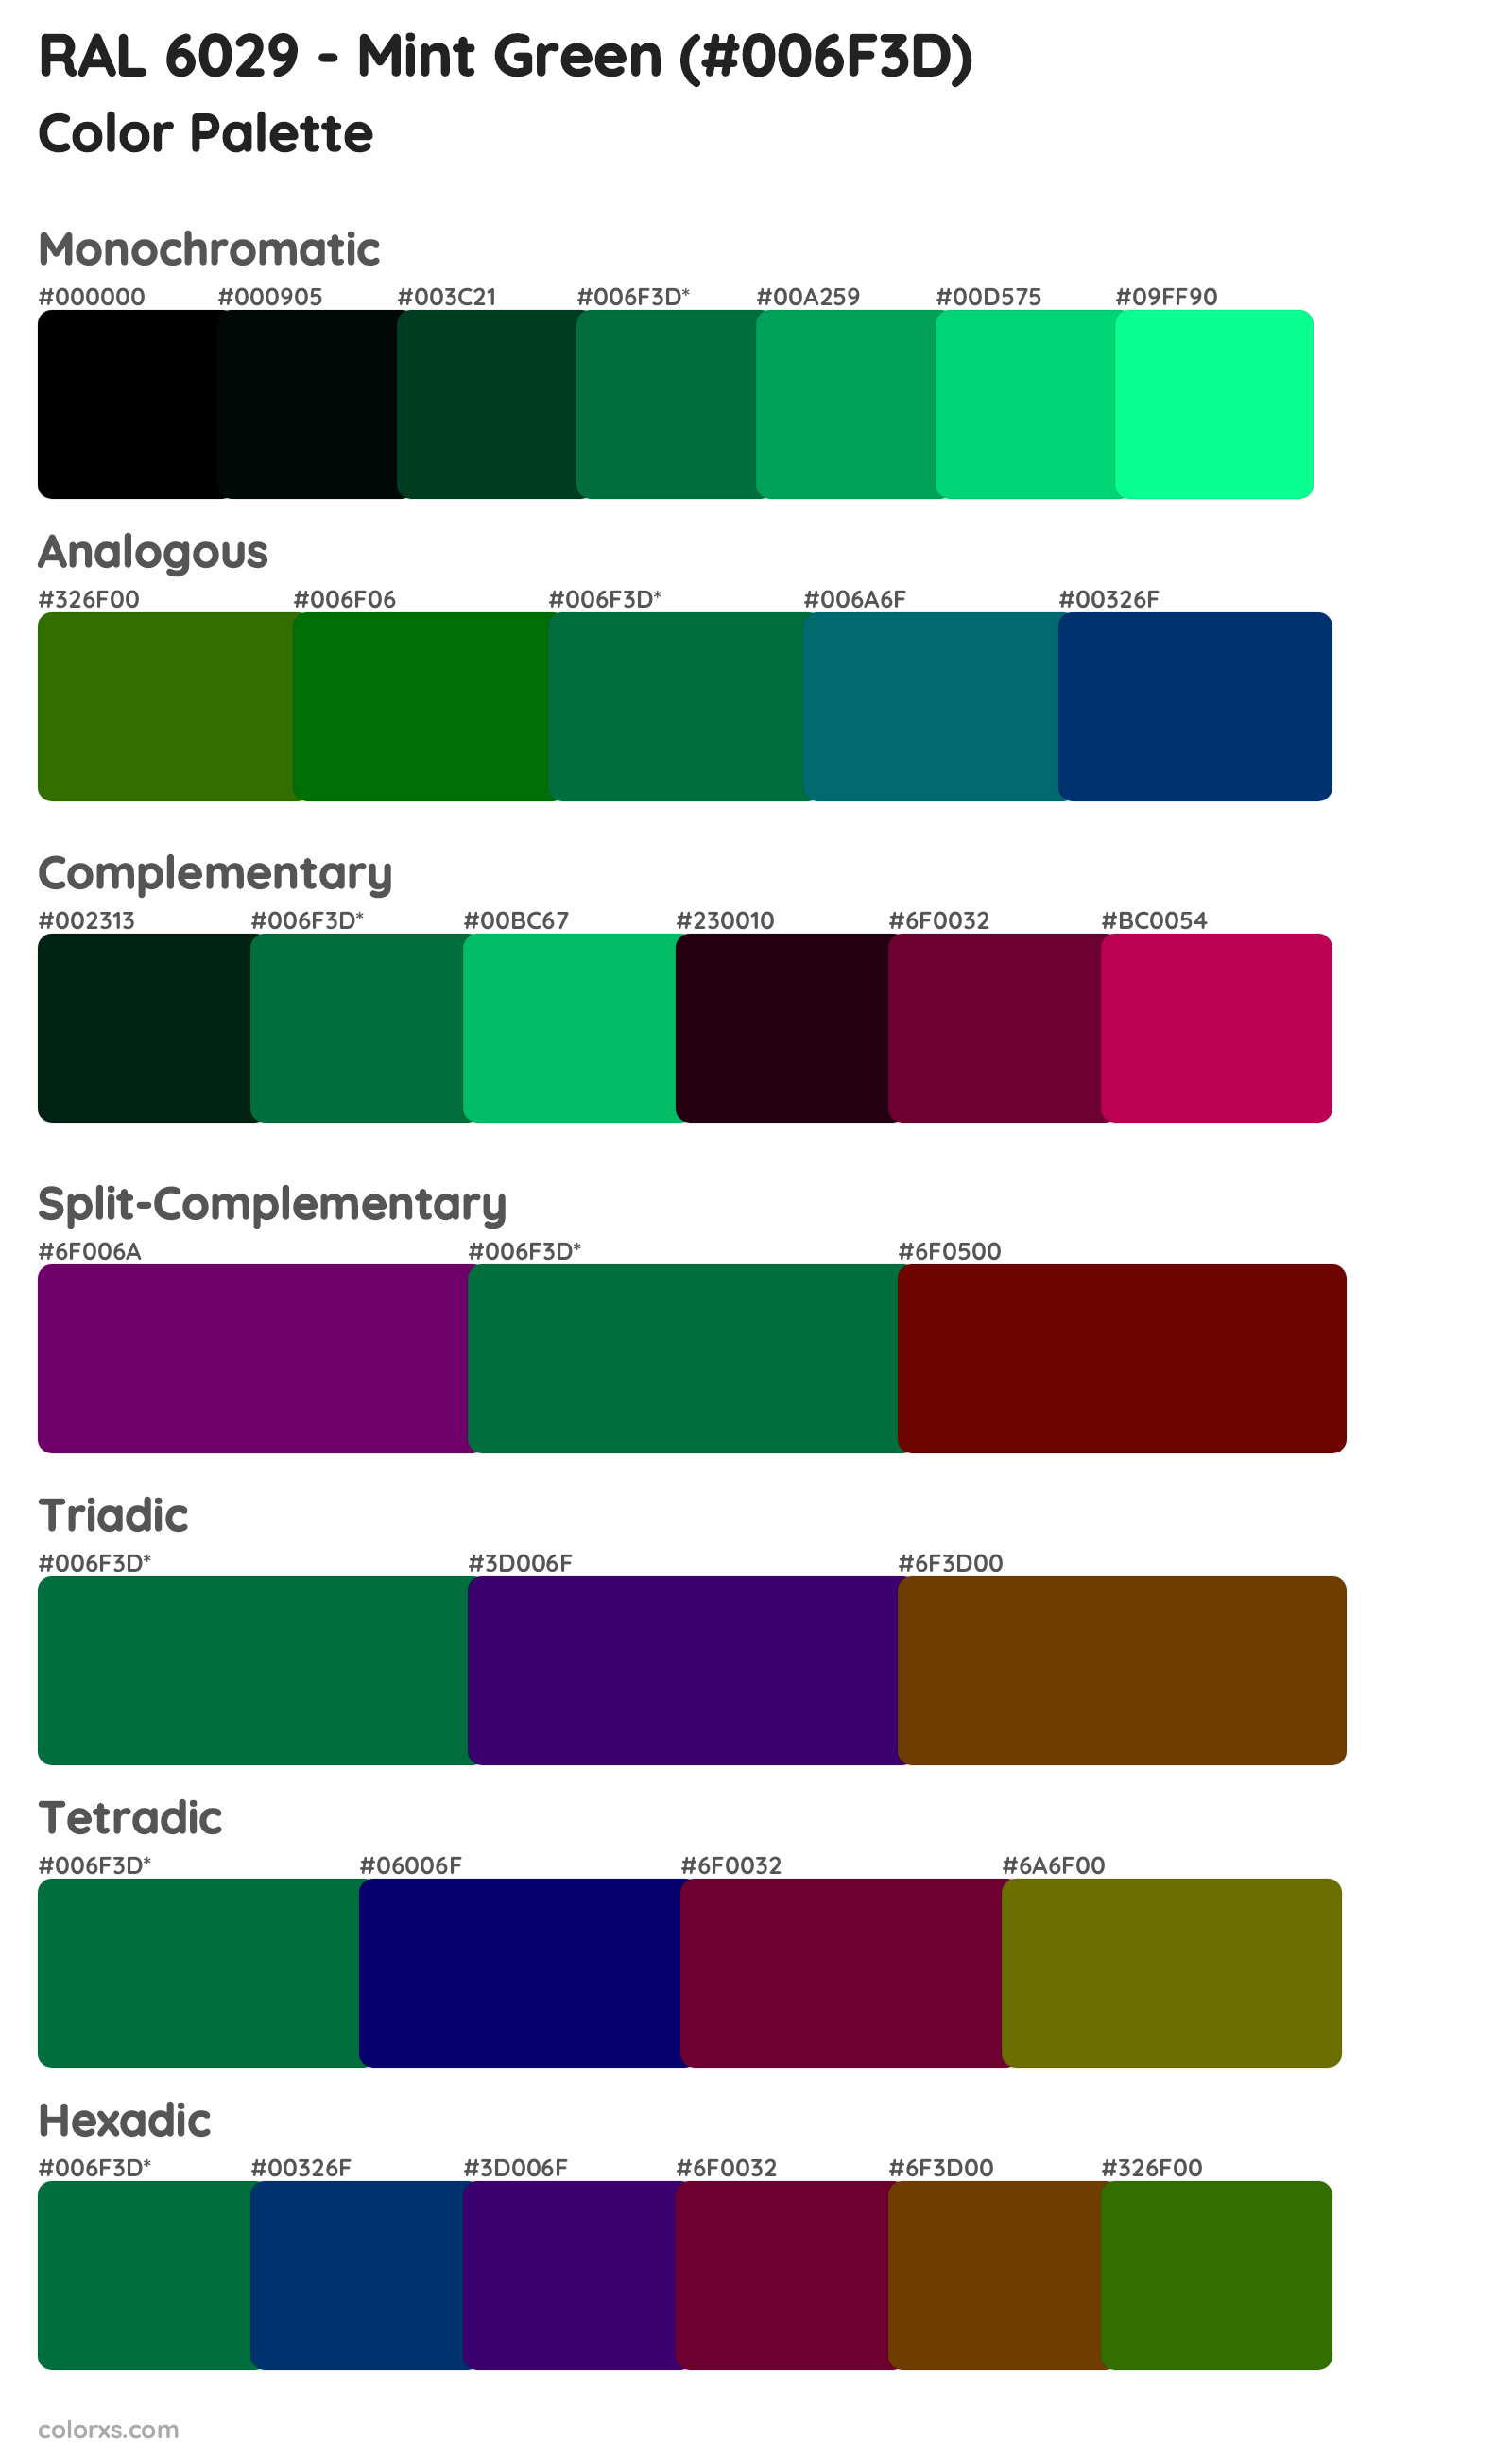 RAL 6029 - Mint Green Color Scheme Palettes